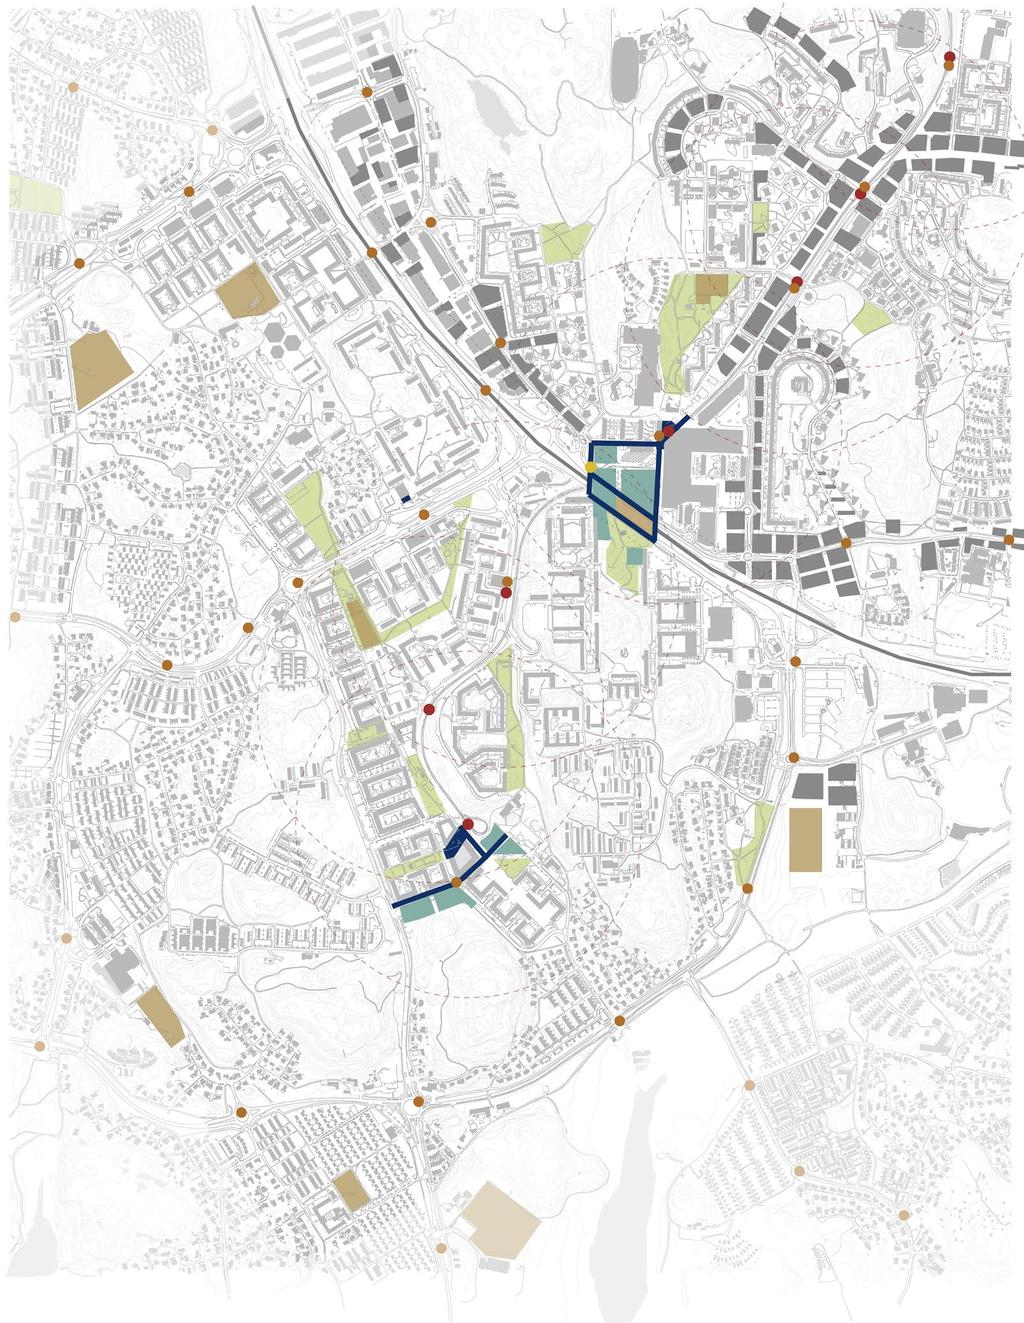 ILLUSTRATION AV TÄNKBAR BEBYGGELSE I STADSKVALITETSCENARIOT I kartan till höger har stadskvalitetscenariots struktur använts till grund för att illustrera tänkbar ny bebyggelse i Biskopsstaden.